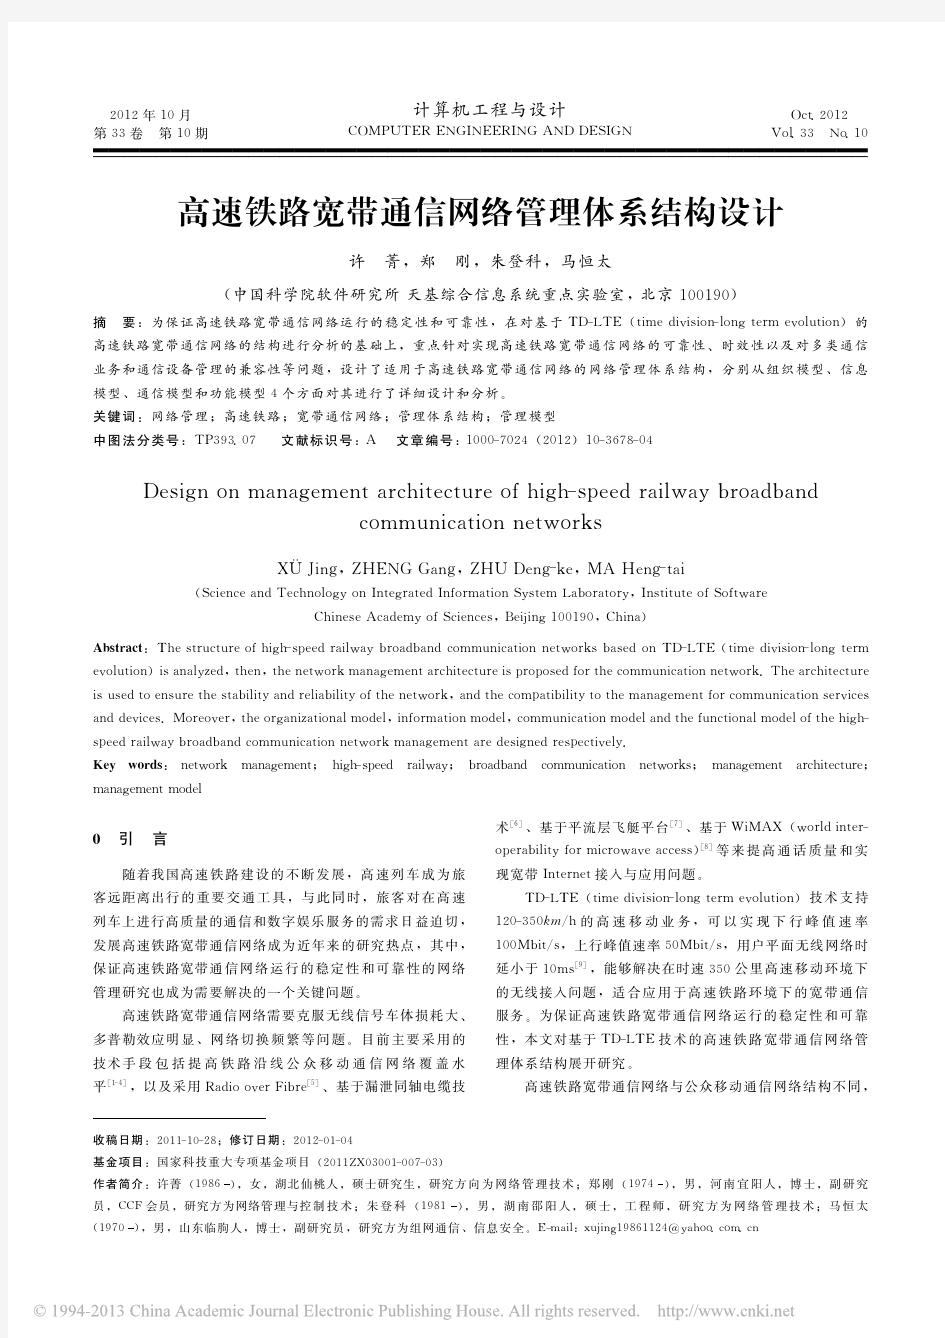 高速铁路宽带通信网络管理体系结构设计_许菁